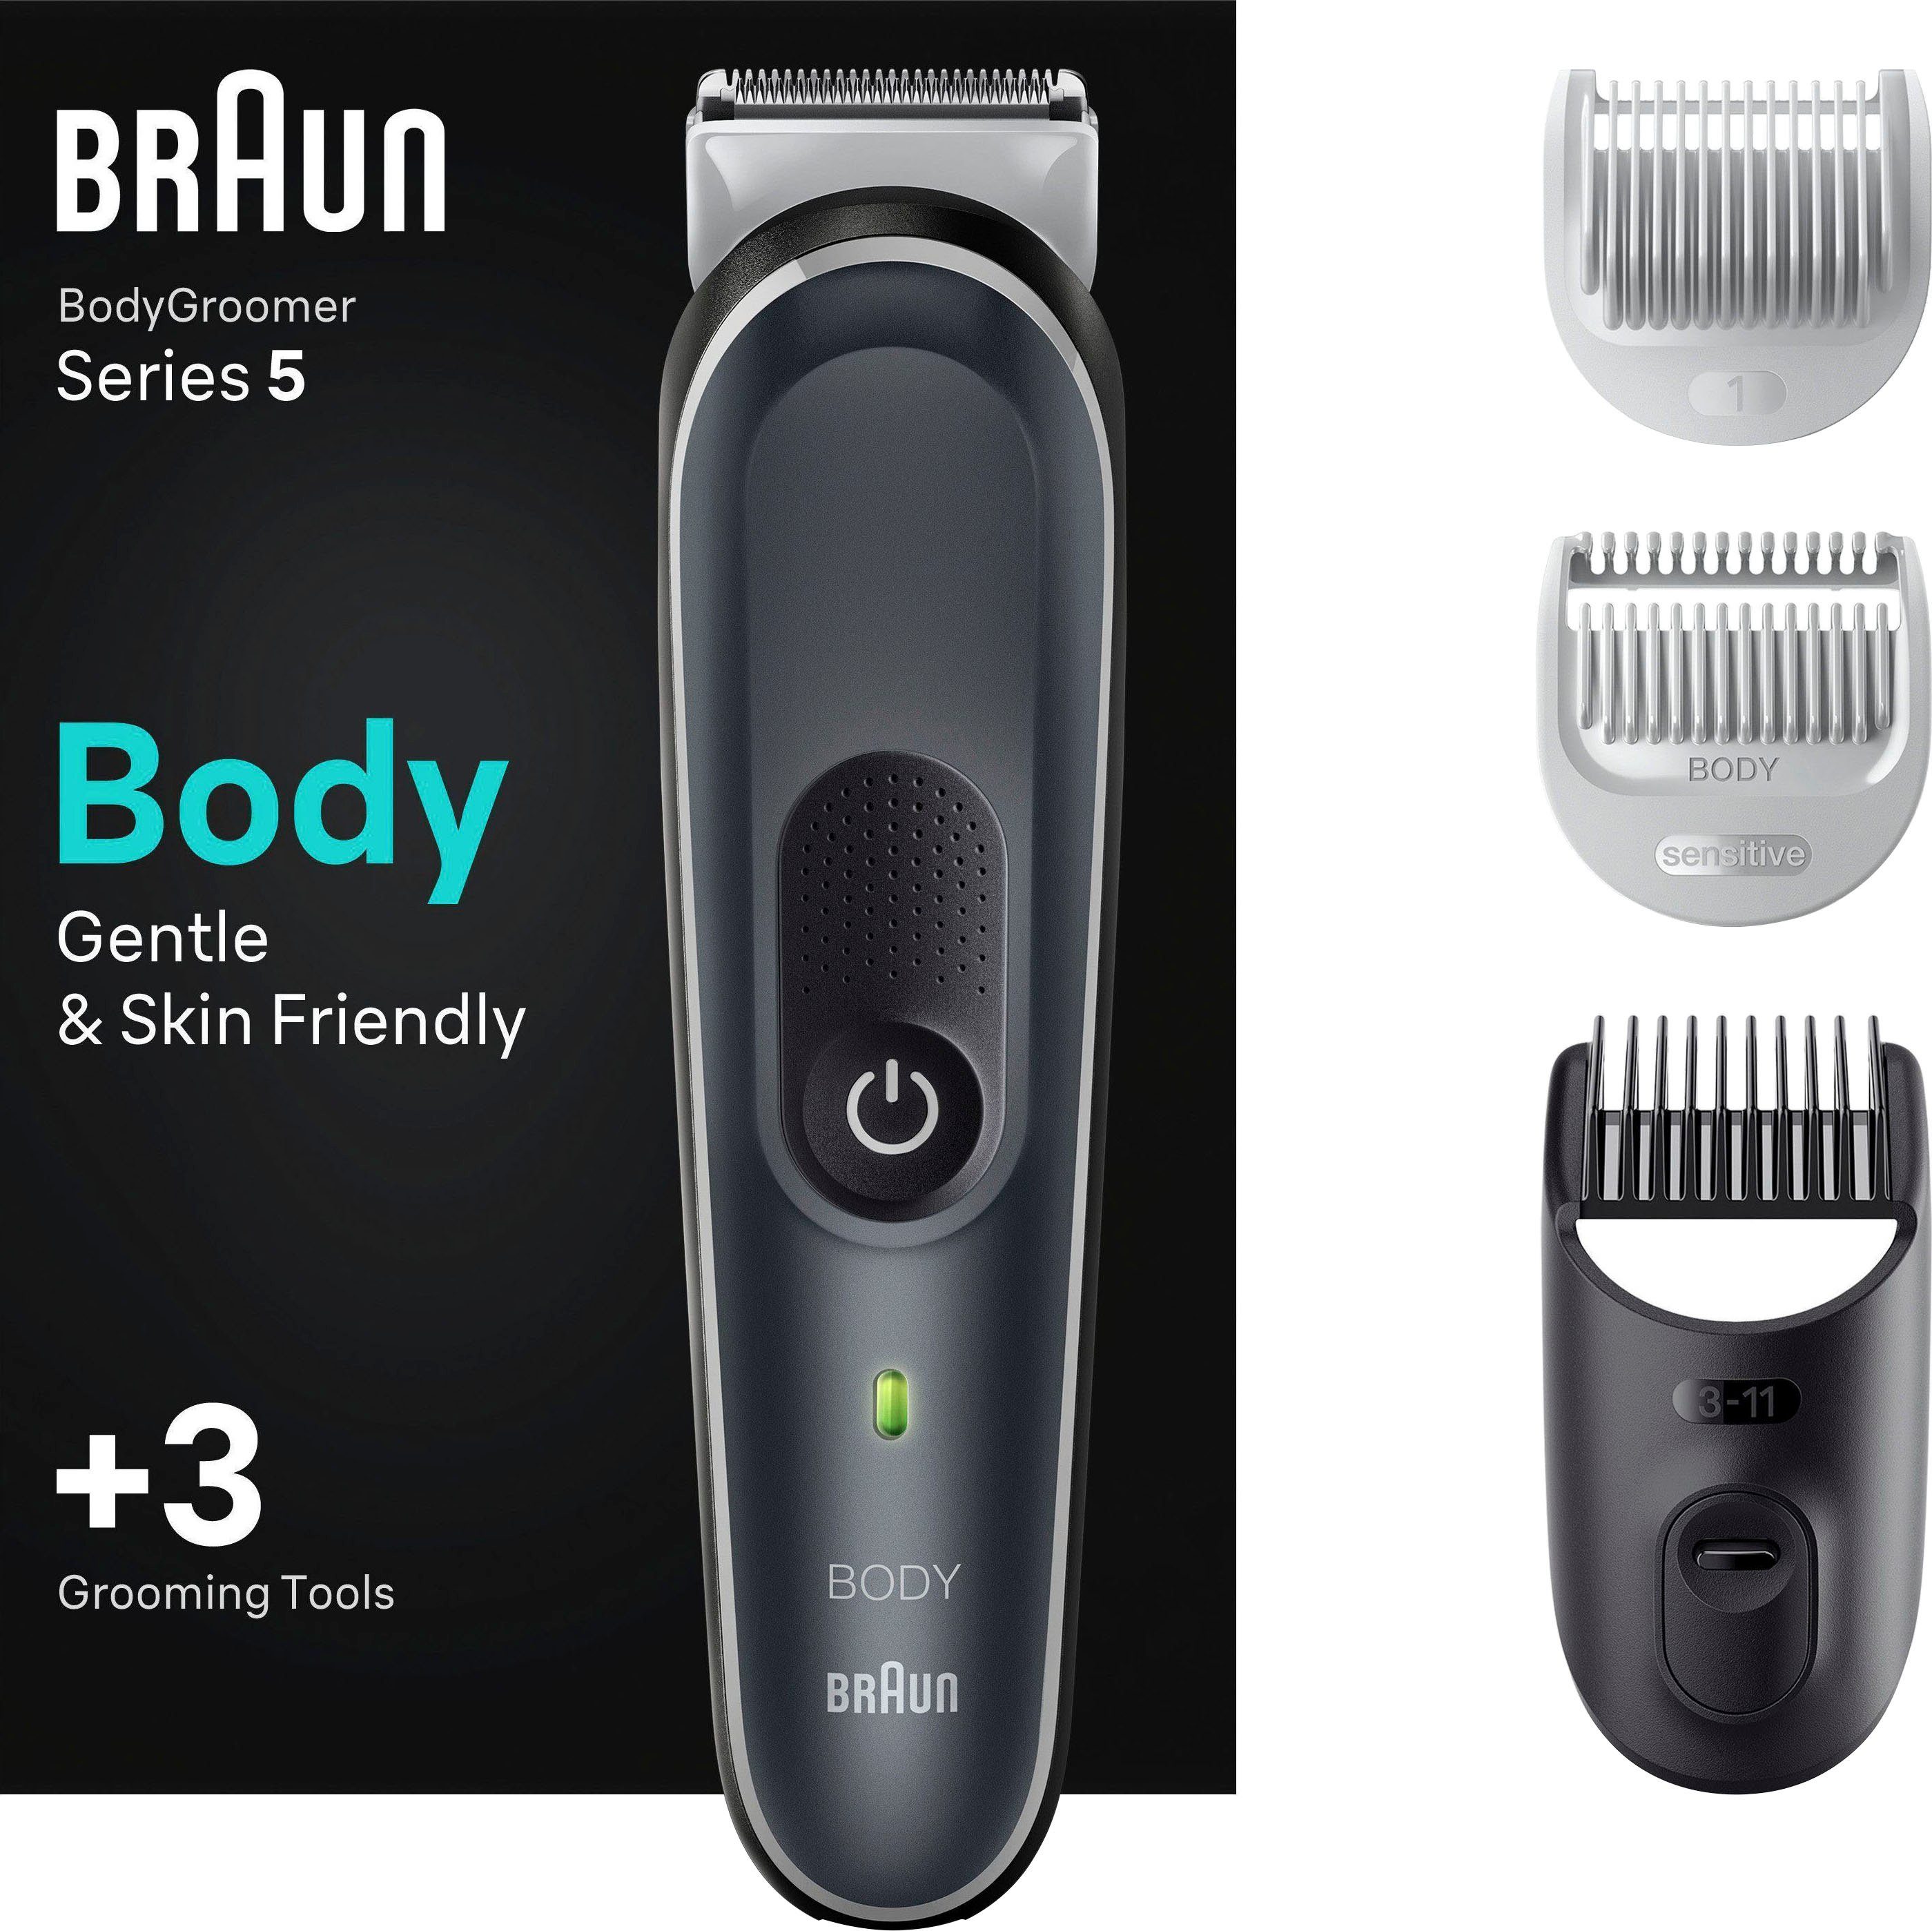 Sonderverkauf am Braun Haarschneider Bodygroomer Wasserdicht BG5340, SkinShield-Technologie